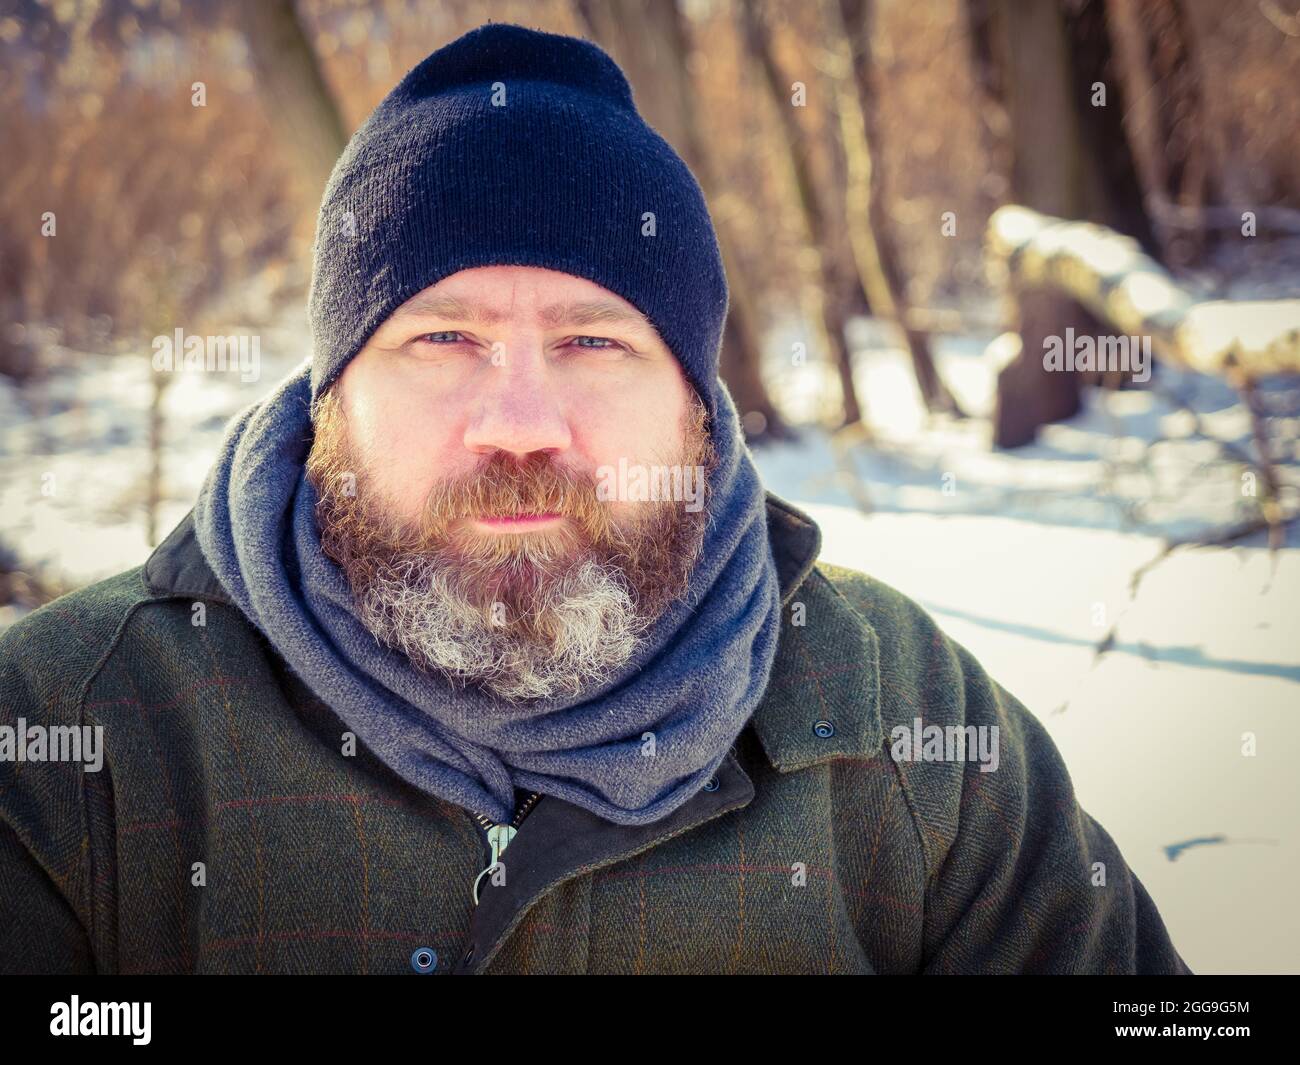 Im Freien Porträt eines erwachsenen bärtigen europäischen Mannes im Winter. Bärtiger Mann, der sich auf einem Winterspaziergang im verschneiten Wald entspannt, eine ehrliche Aufnahme, eine Lifestyle-Szene Stockfoto